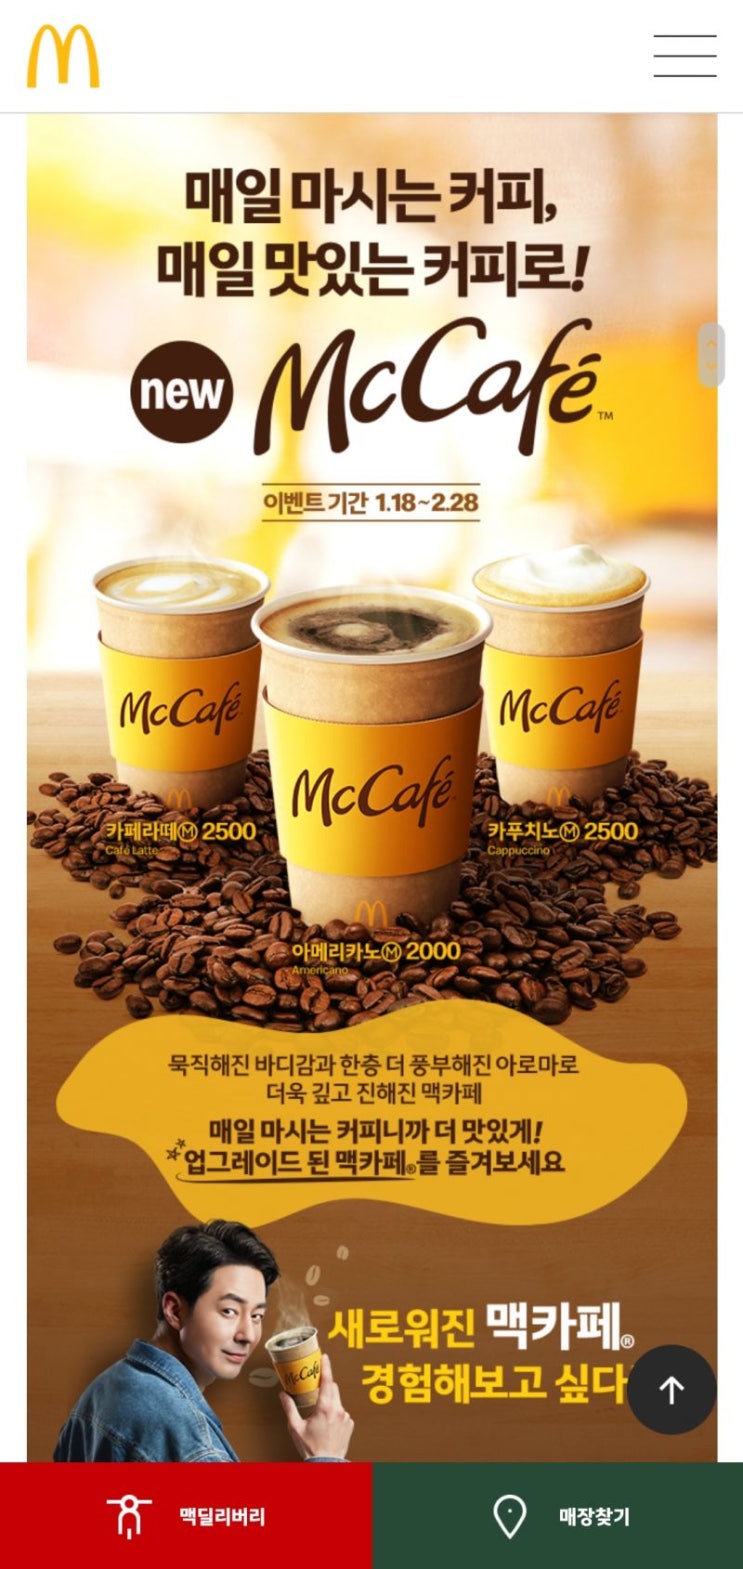 무료커피쿠폰 맥도날드 맥카페 아메리카노 M 커피 한잔 무료로 받아가세요